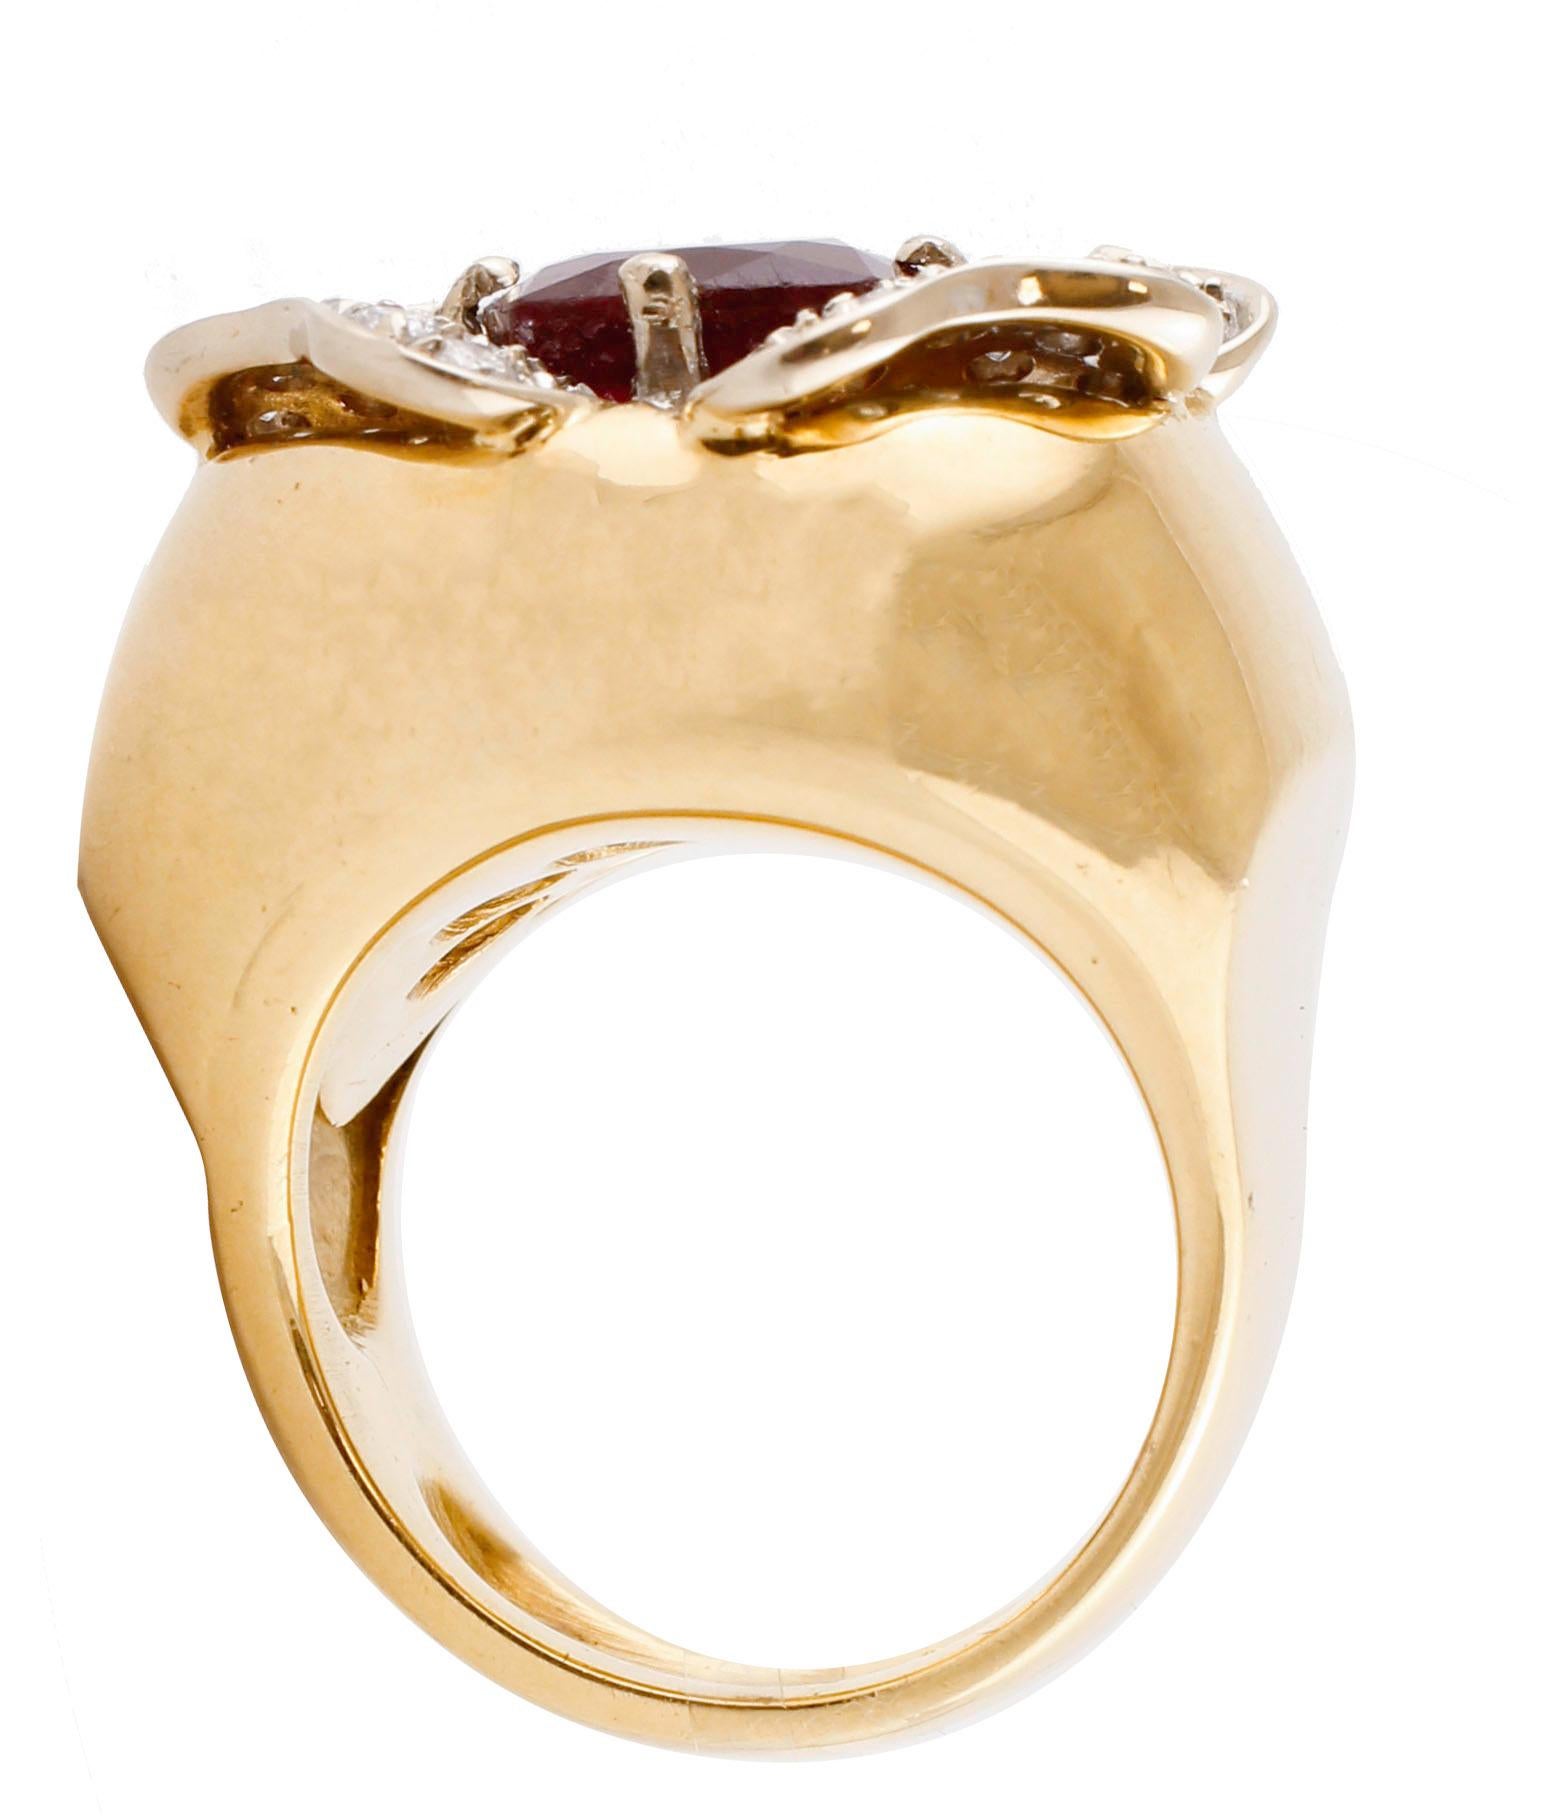 6 karat gold ring